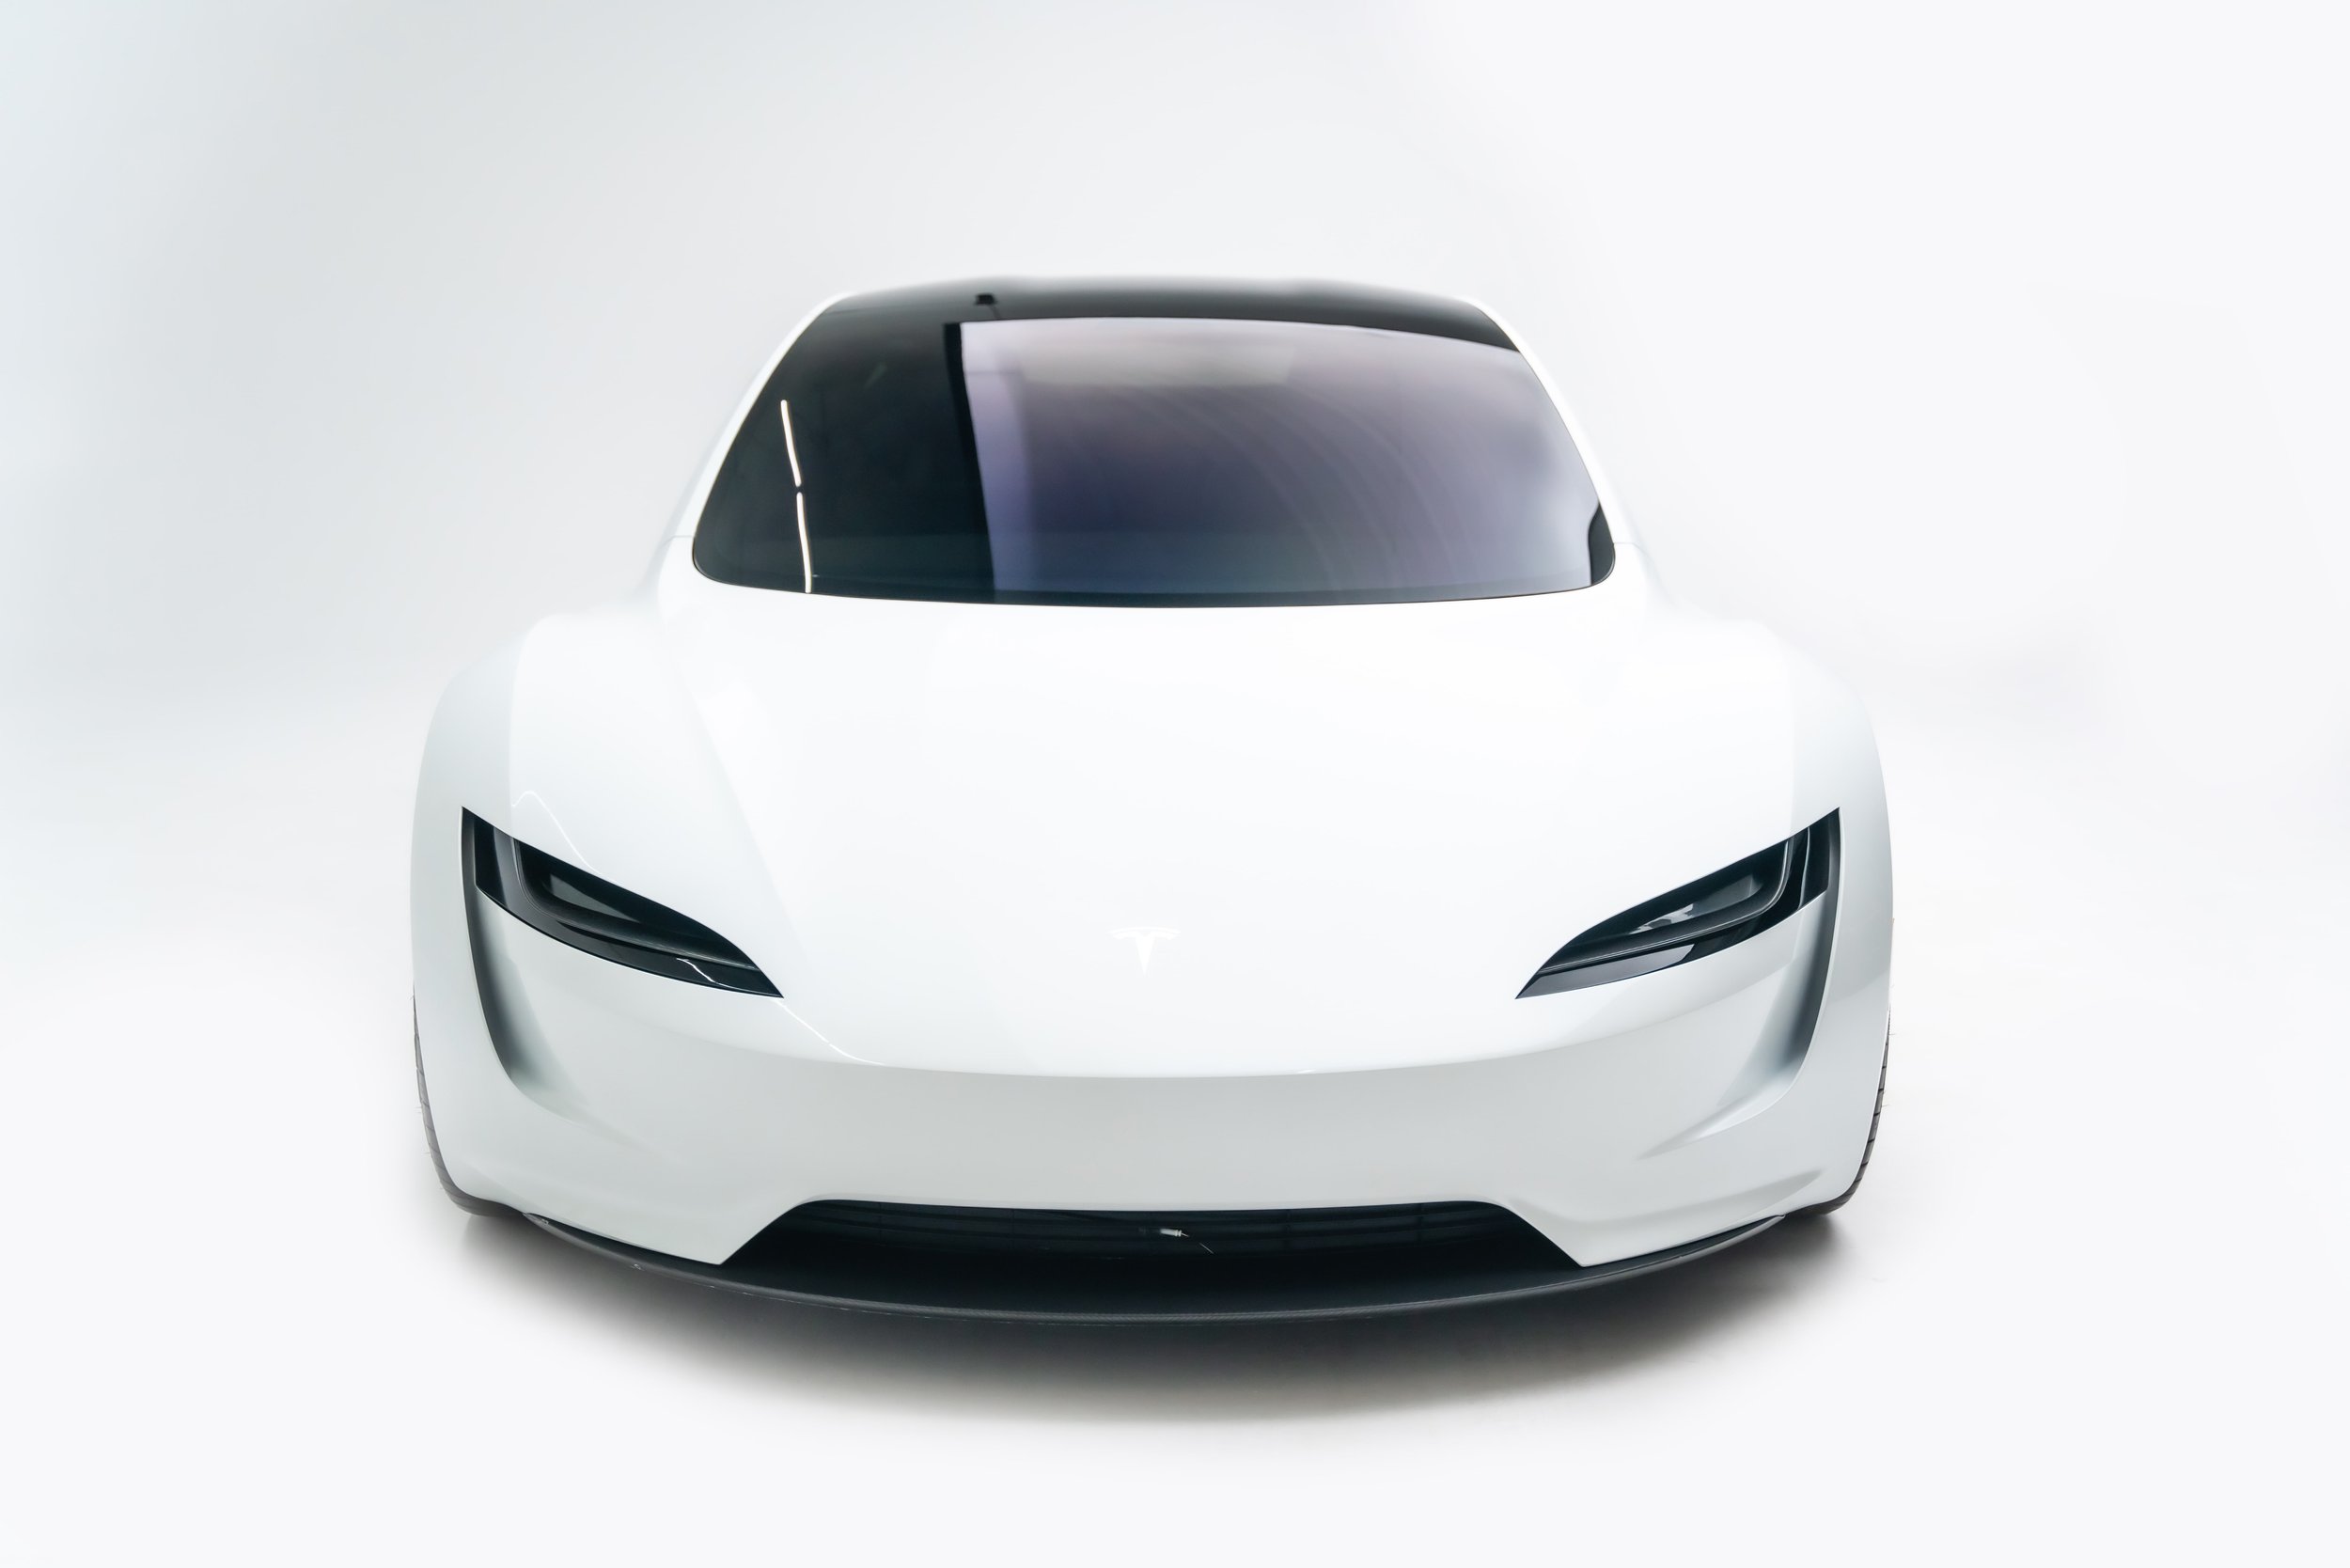 Tesla Roadster 2.0 — Petersen Automotive Museum